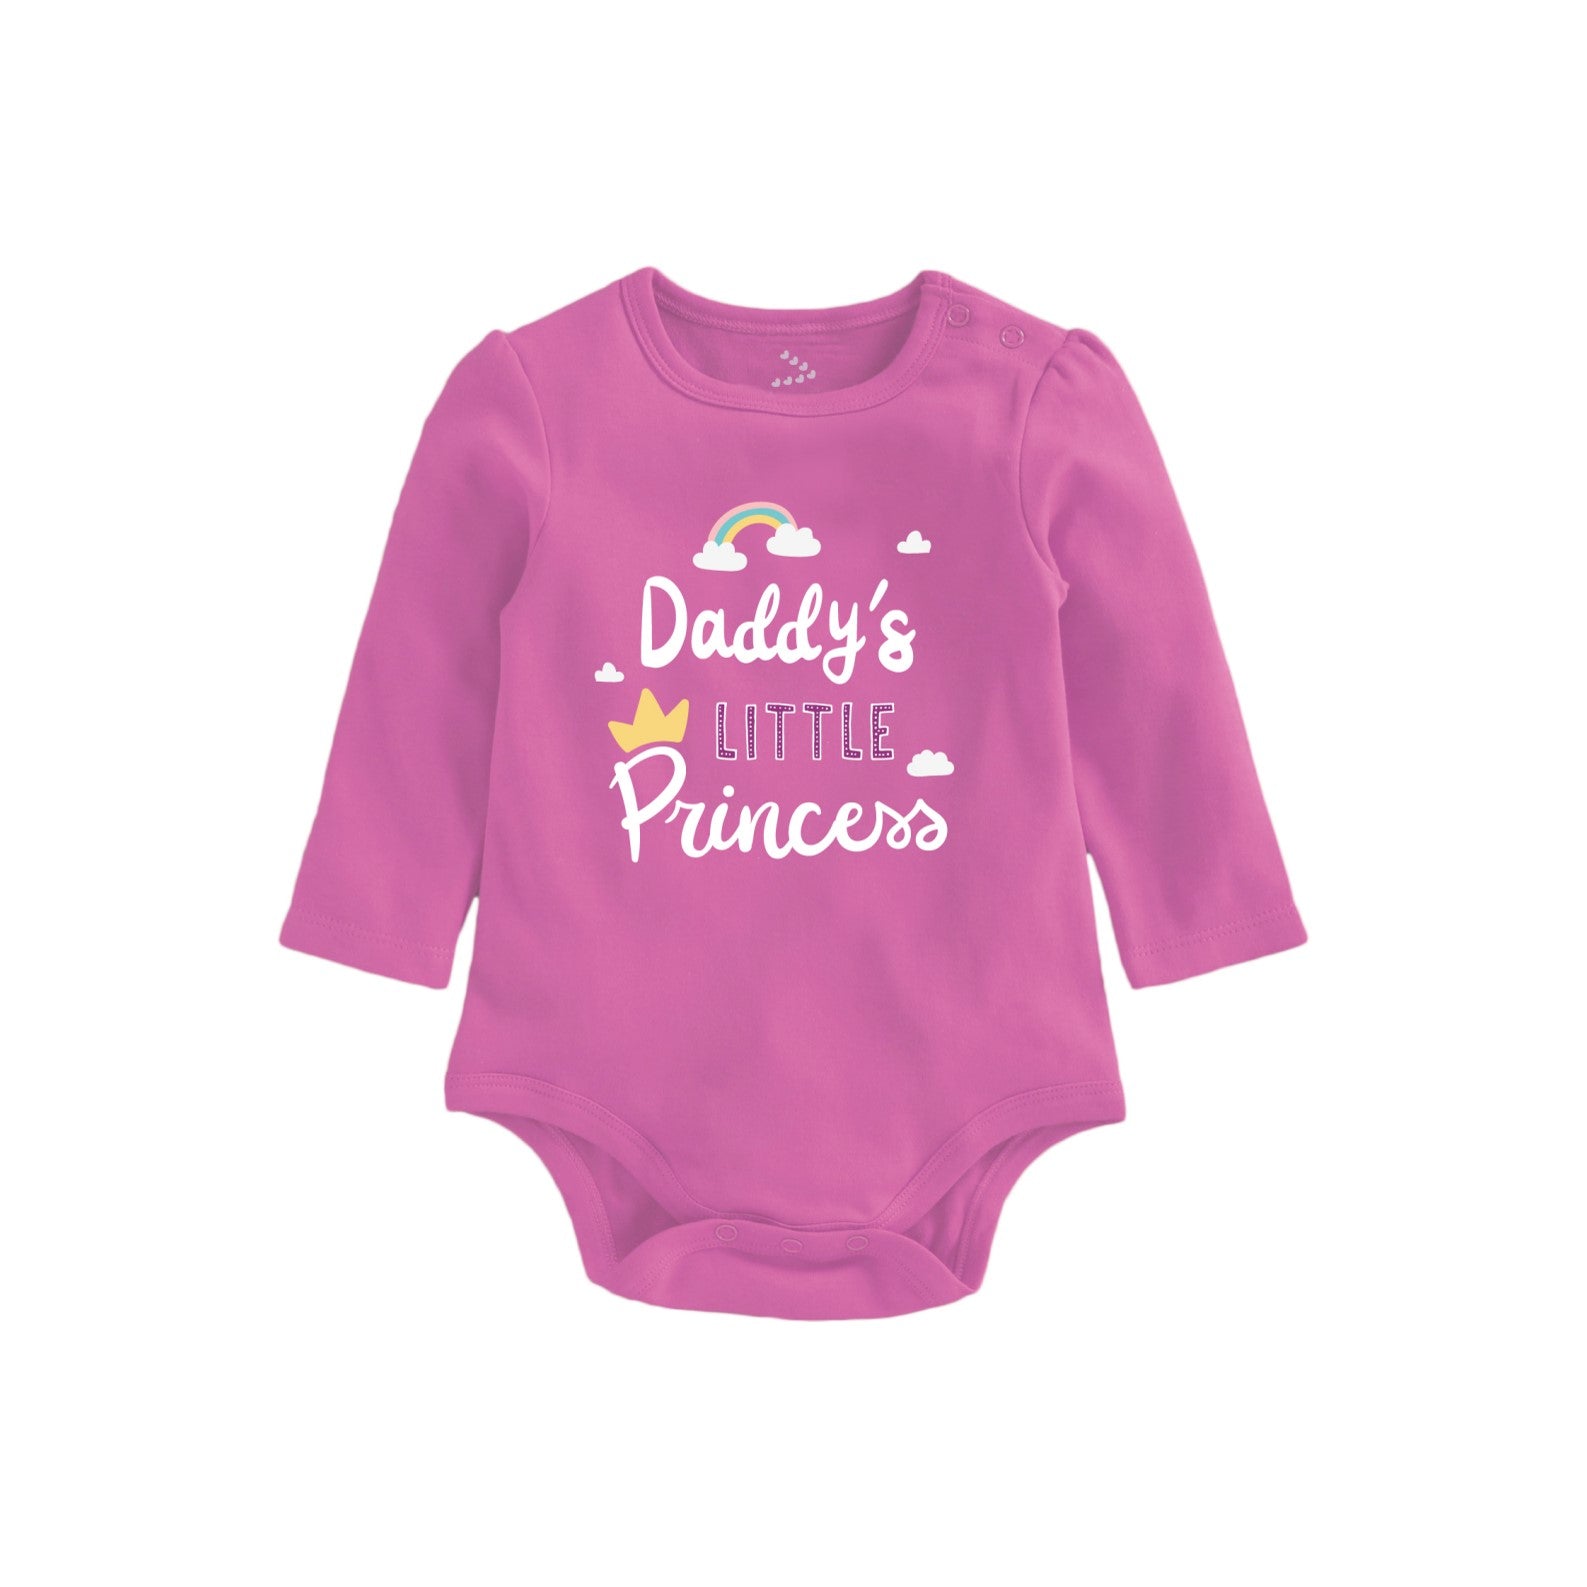 Daddy's Princess Printed Baby Onesie - Pink Full-Sleeves